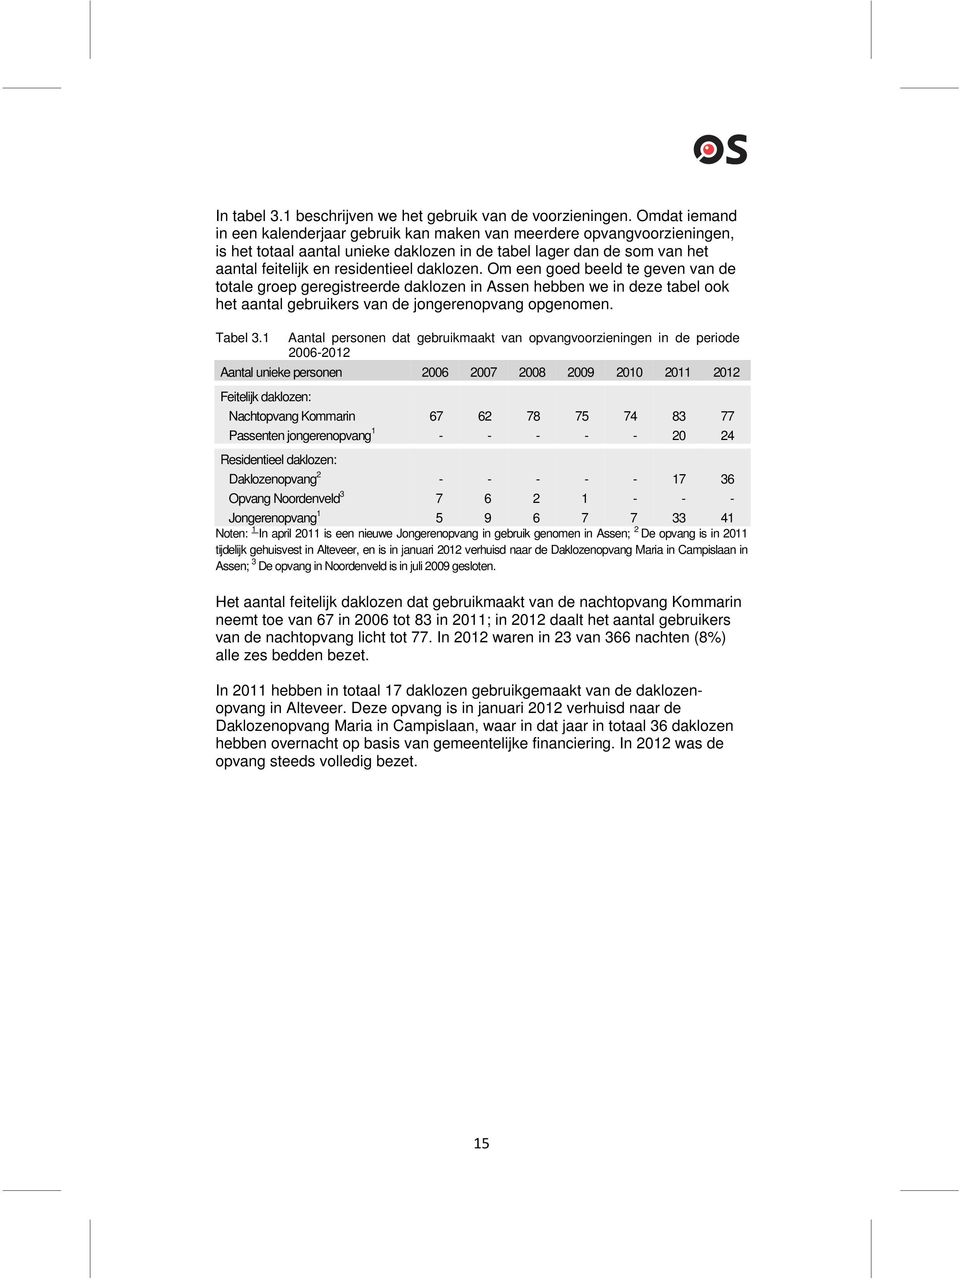 daklozen. Om een goed beeld te geven van de totale groep geregistreerde daklozen in Assen hebben we in deze tabel ook het aantal gebruikers van de jongerenopvang opgenomen. Tabel 3.